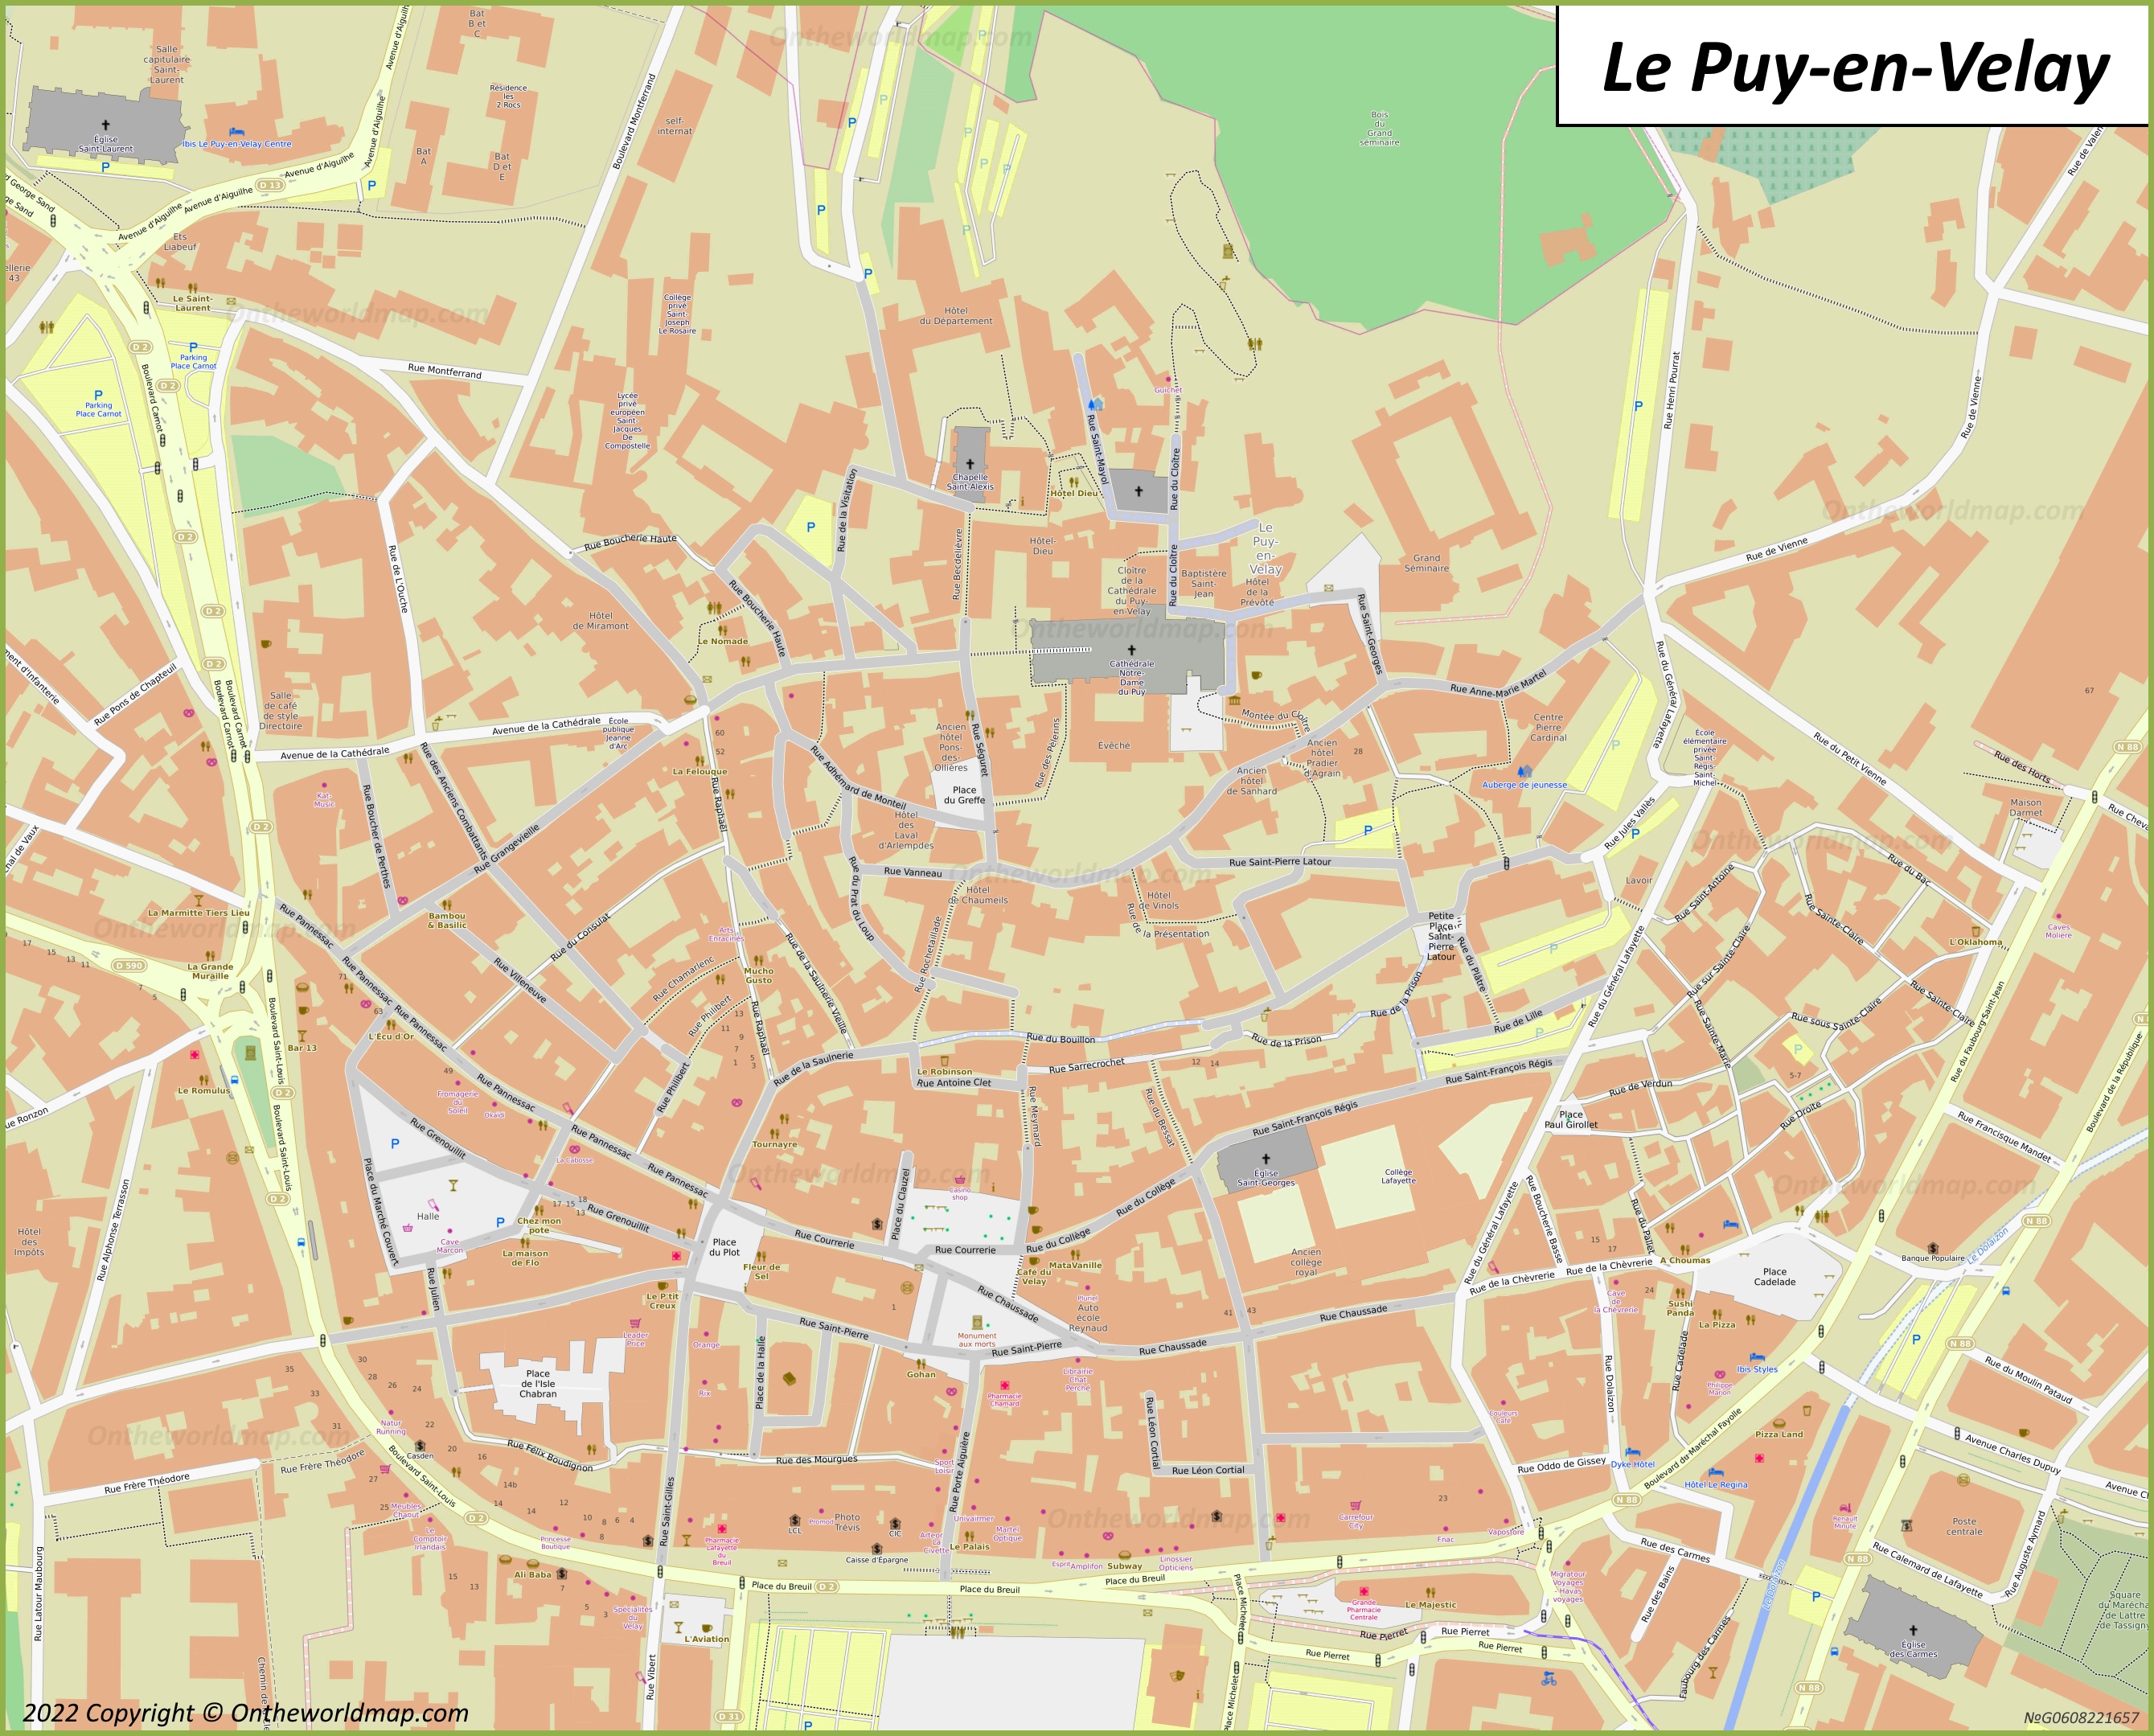 Le Puy-en-Velay Old Town Map